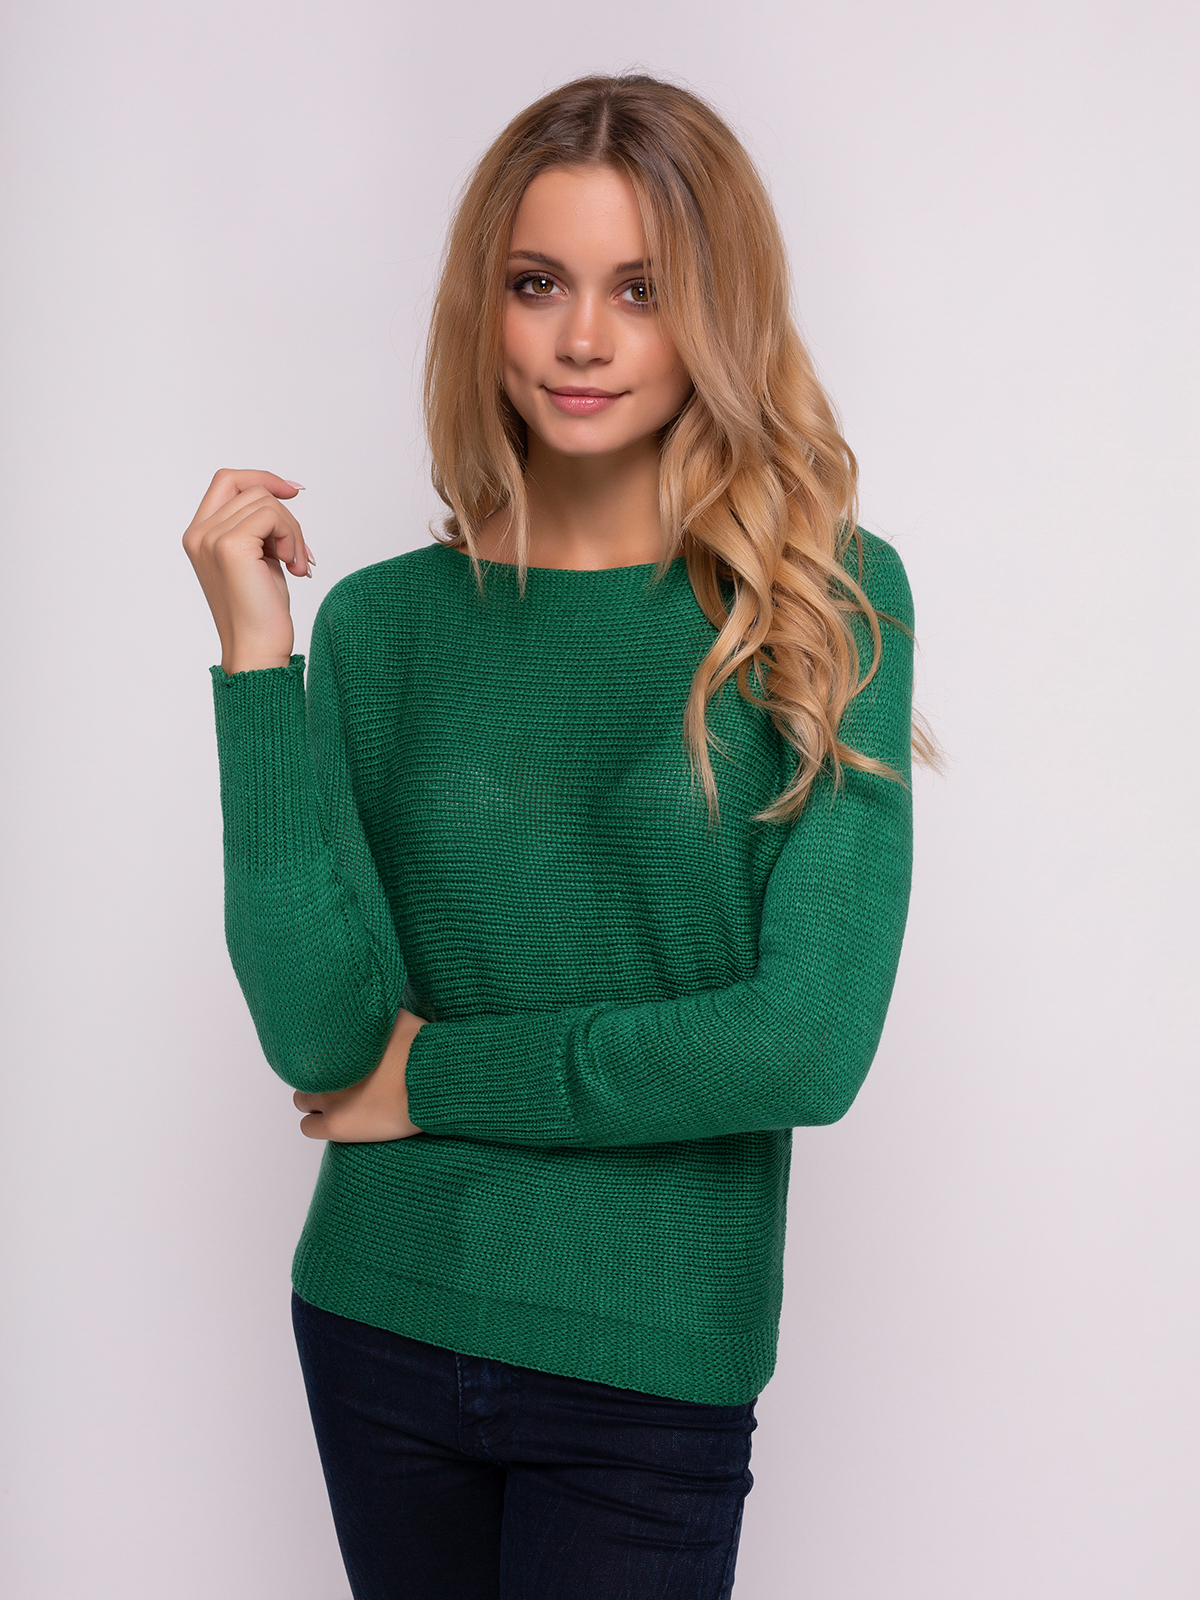 Лина Дианова зеленый свитер